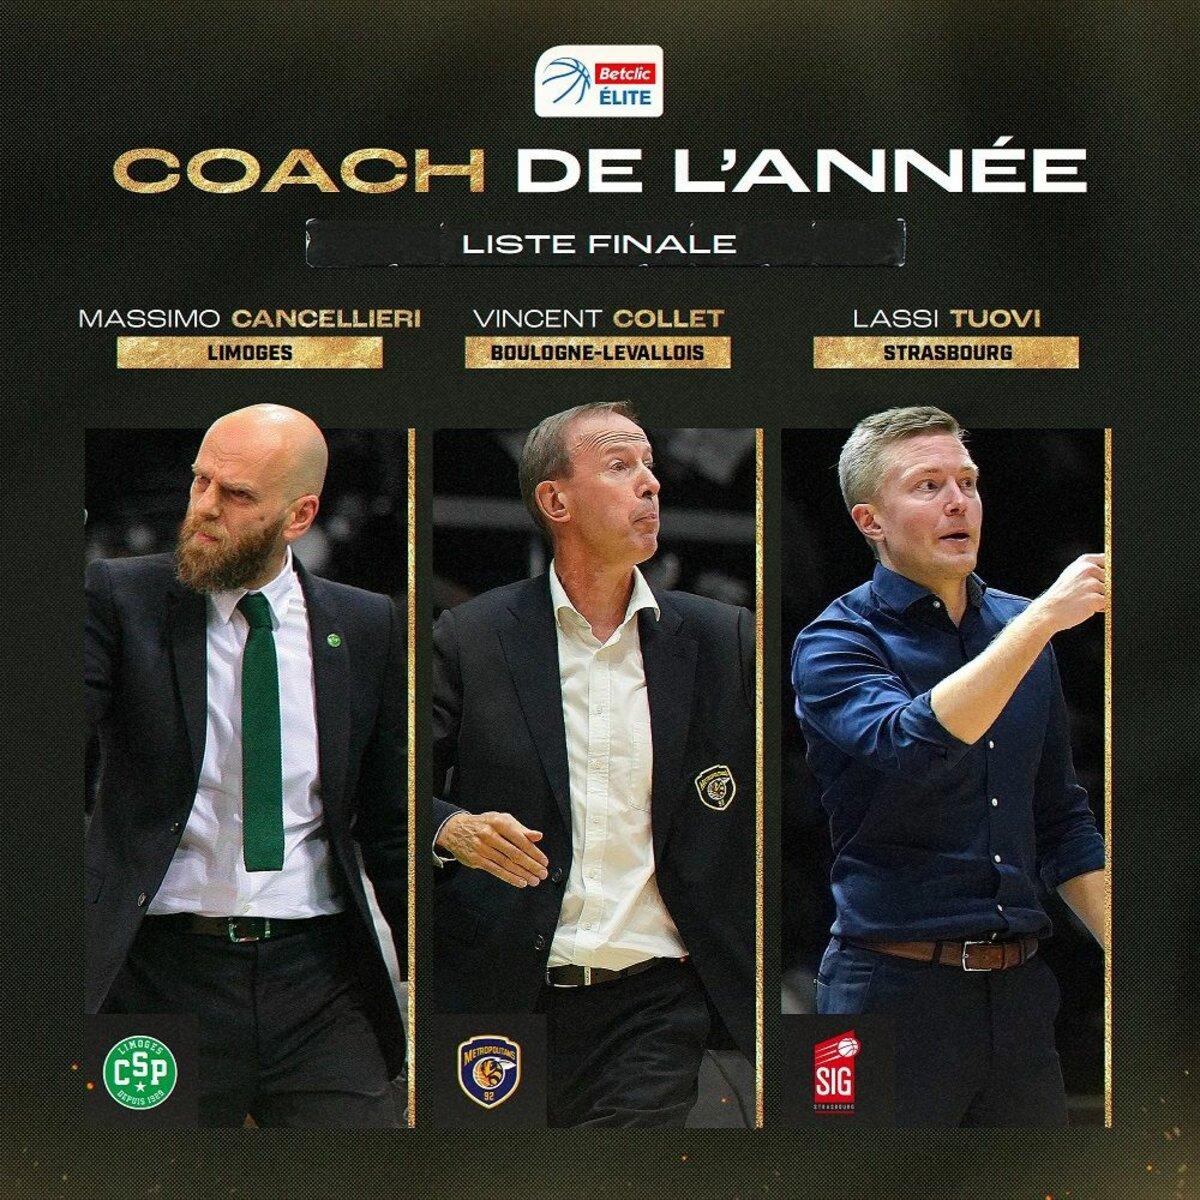 Massimo Cancellieri, Vincent Collet et Lassi Tuovi nommés pour le Trophée de coach de la saison 2021-2022